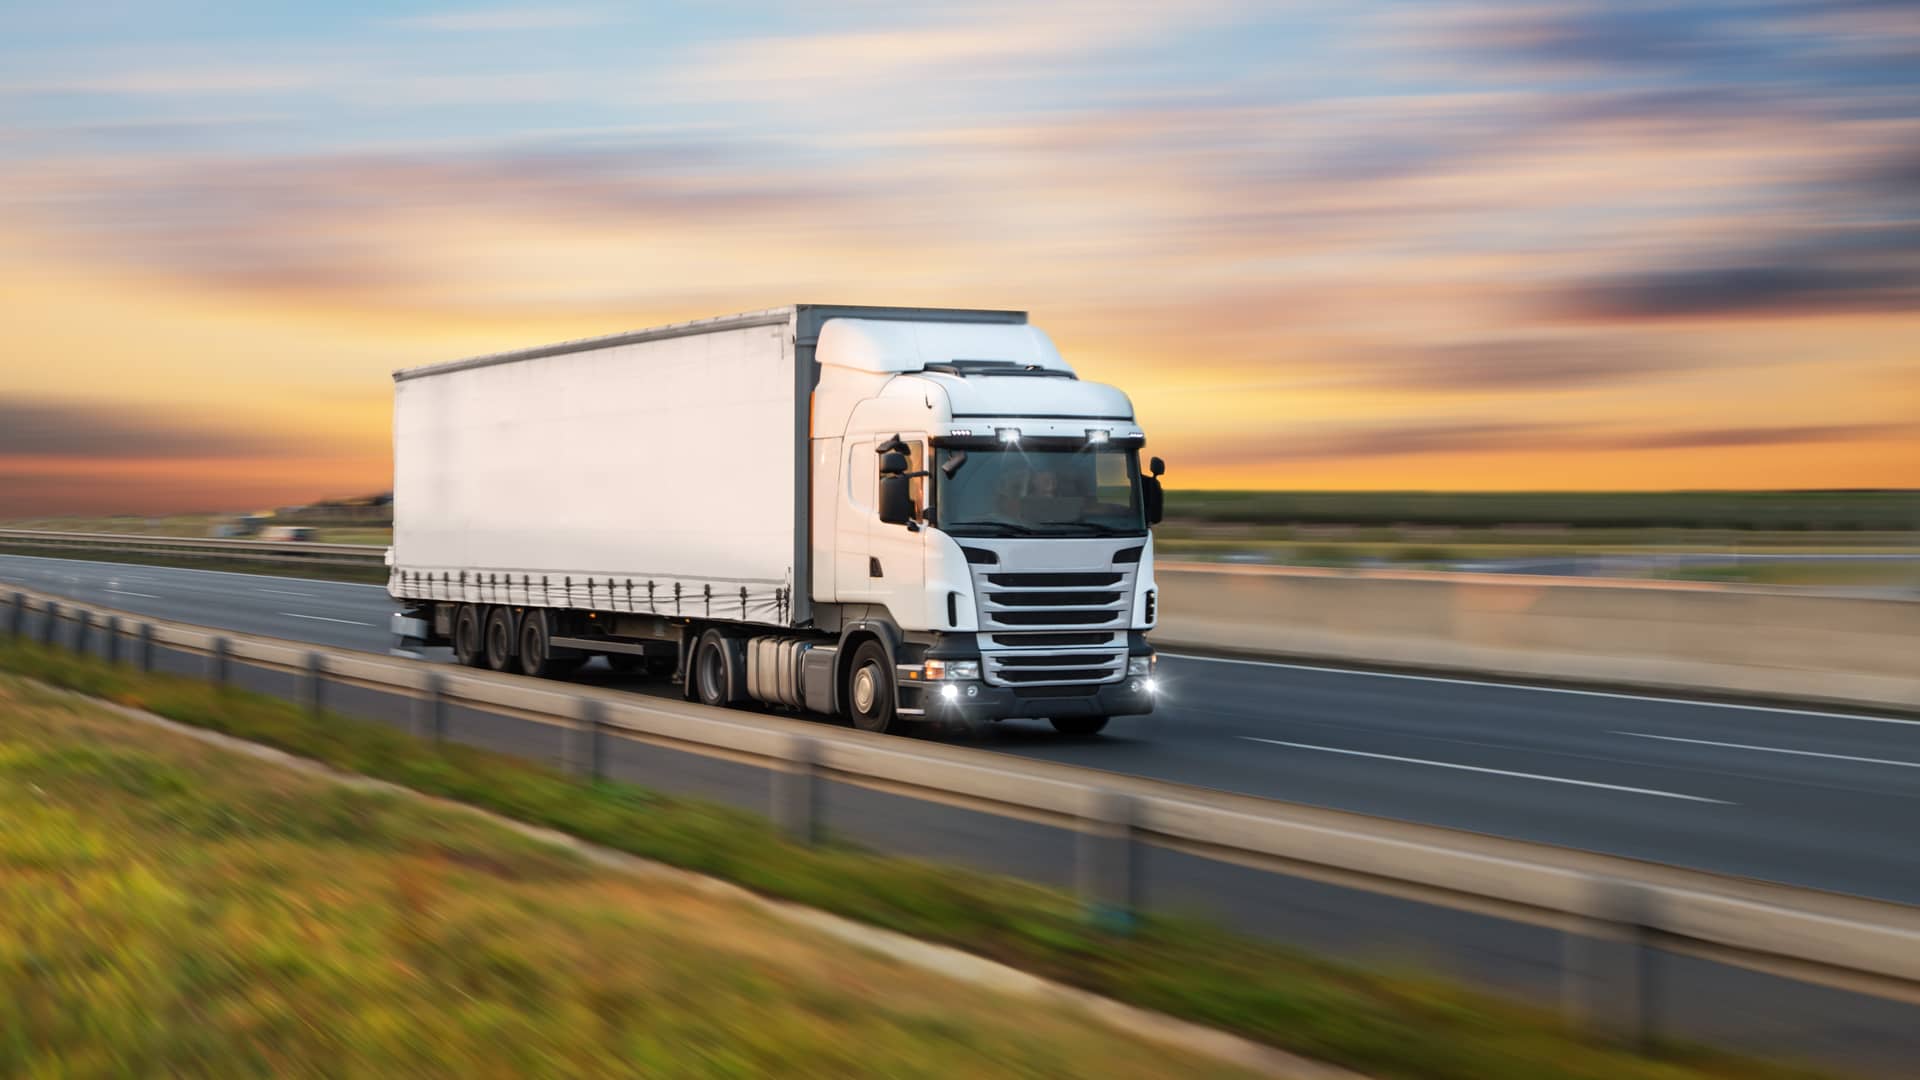 Seguros de camiones Allianz: pólizas, precio y teléfono